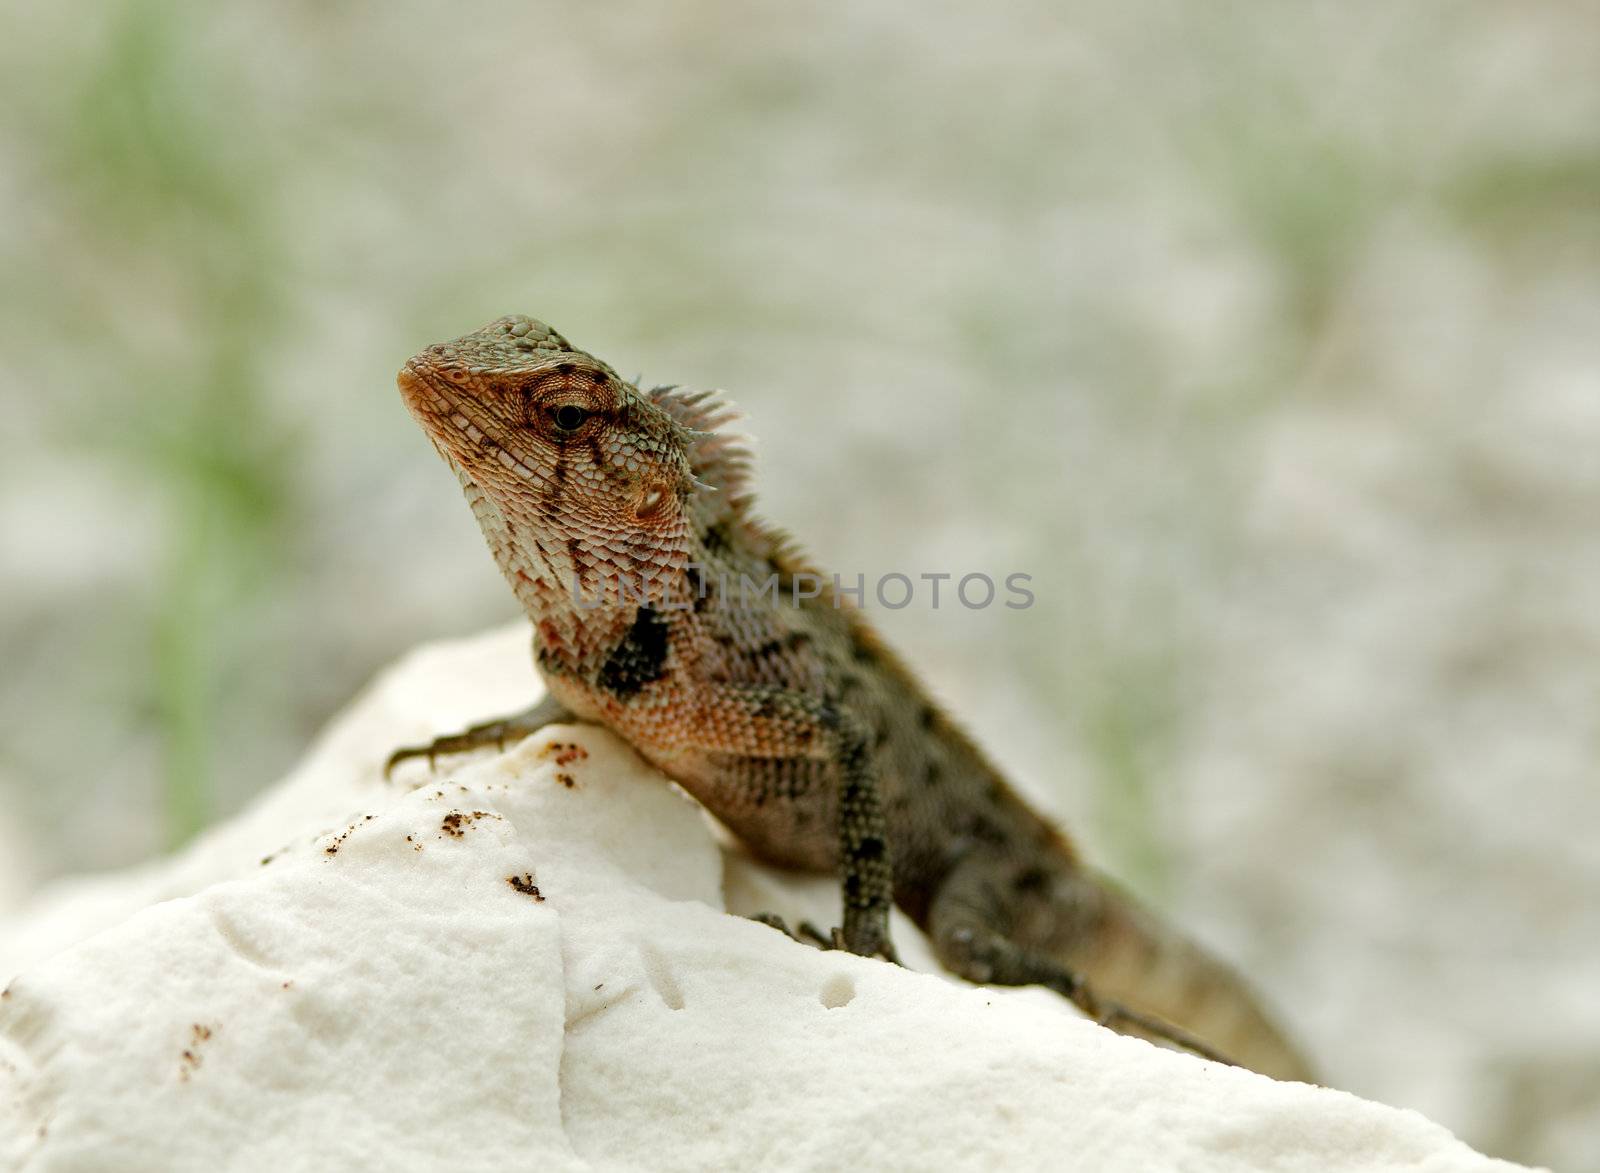 Agama Lizard by zhekos